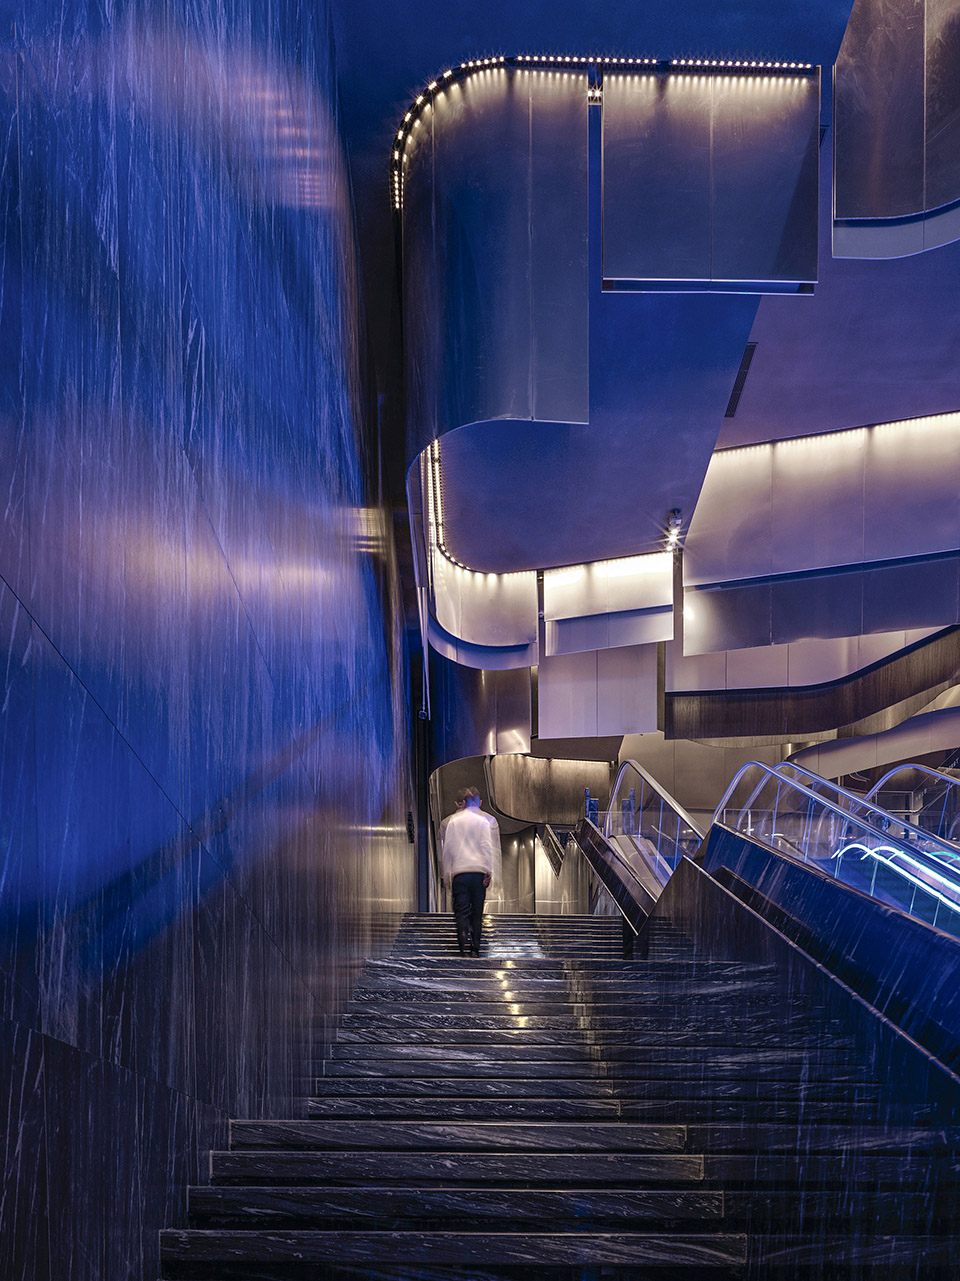 柳州特色与电影元素结合现代酷炫风格干净整洁的光环境,柳州电影院商业空间灯光照明设计,嵌入式筒灯冷光源